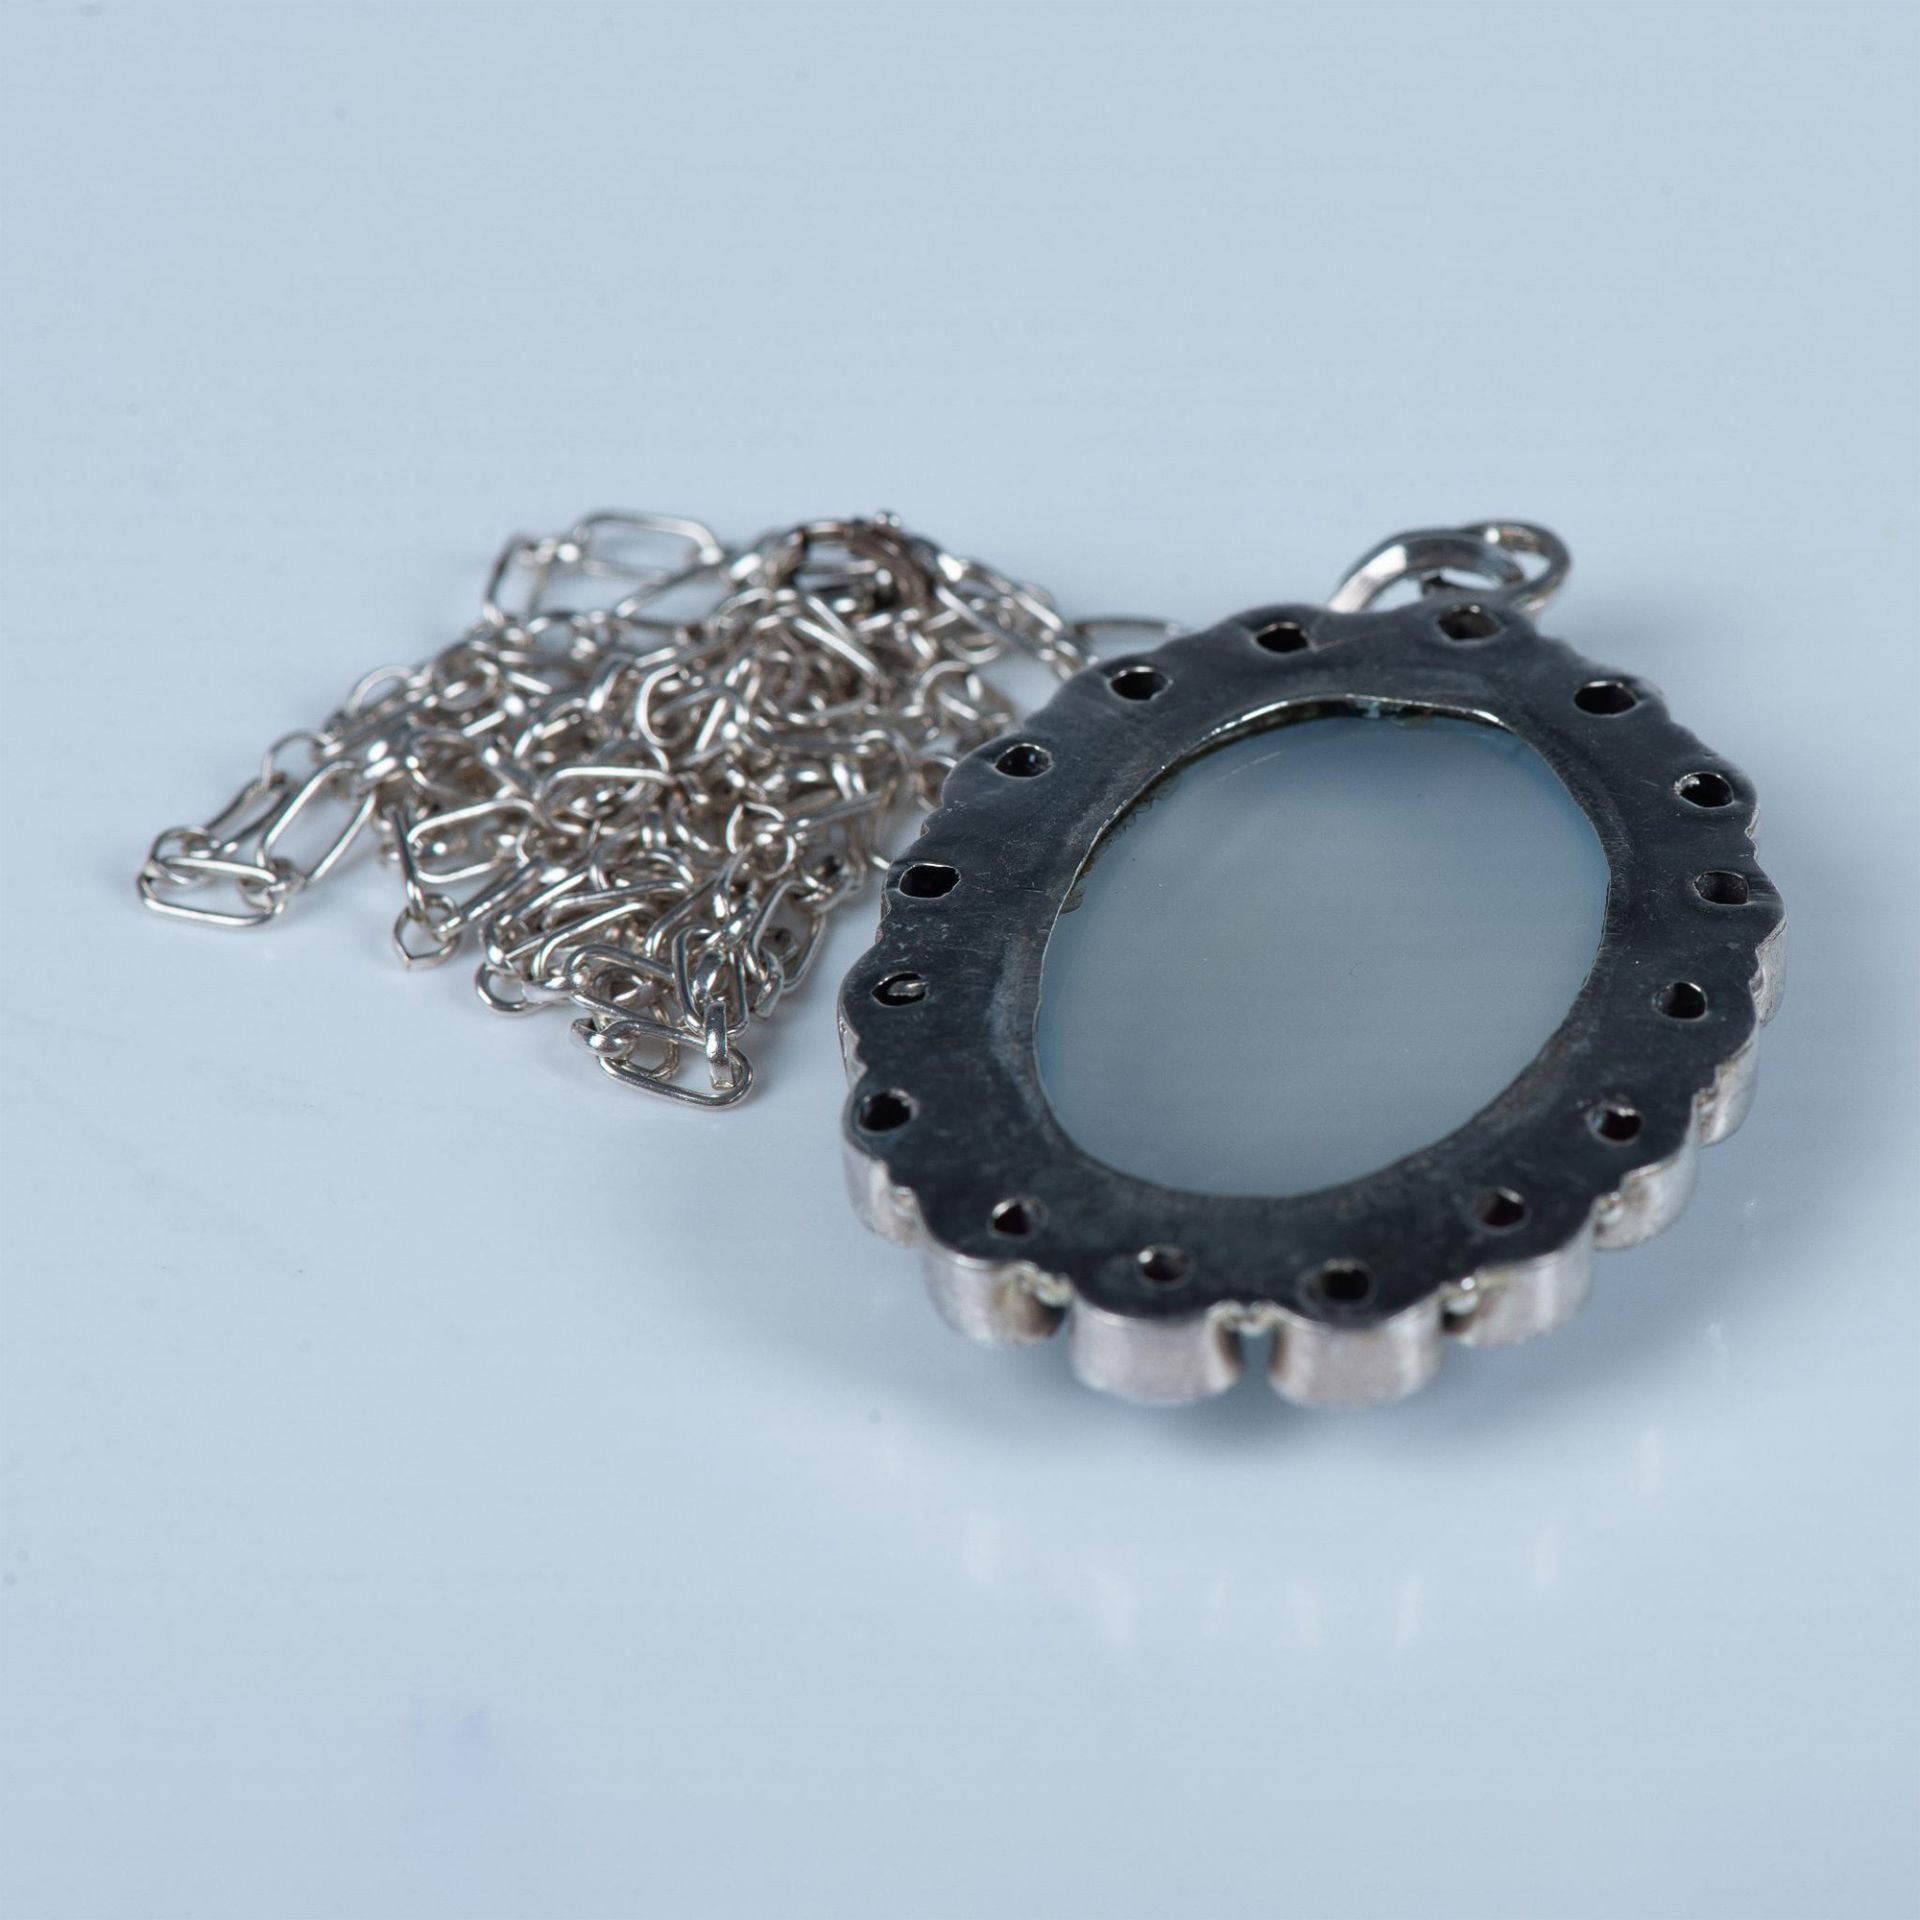 Vintage Sterling Silver, Moonstone & Garnet Pendant Necklace - Image 6 of 7